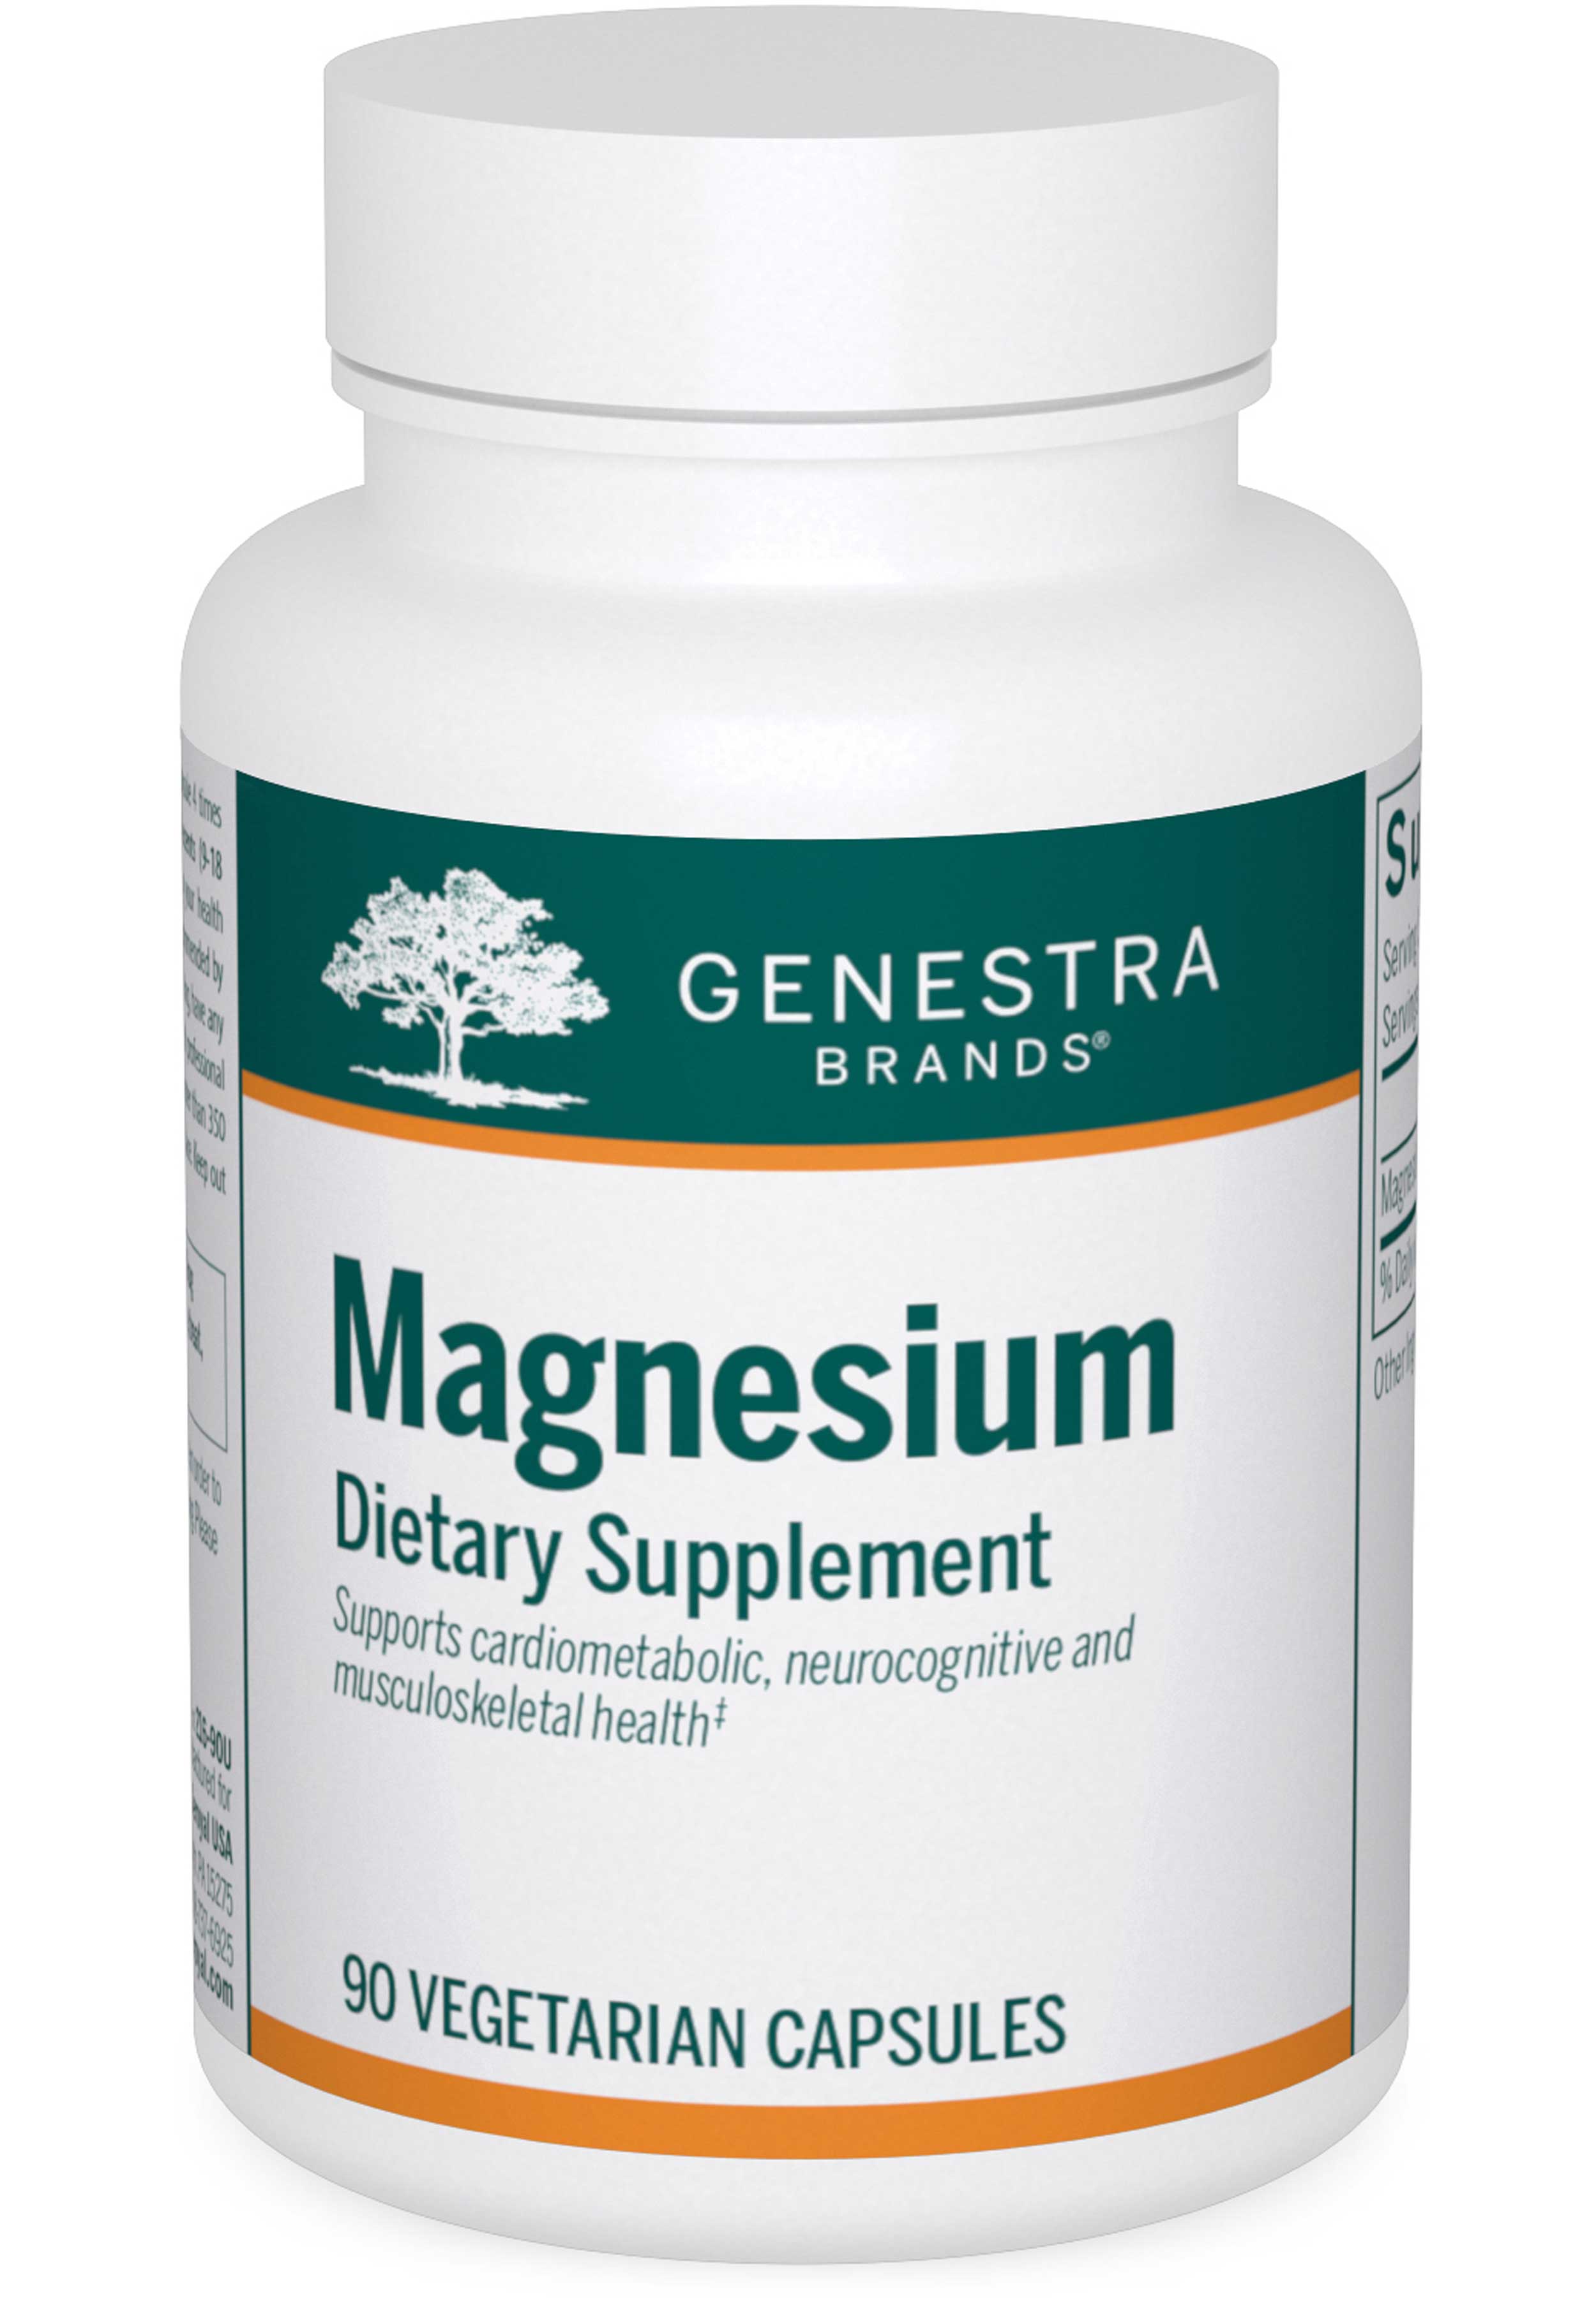 Genestra Brands Magnesium